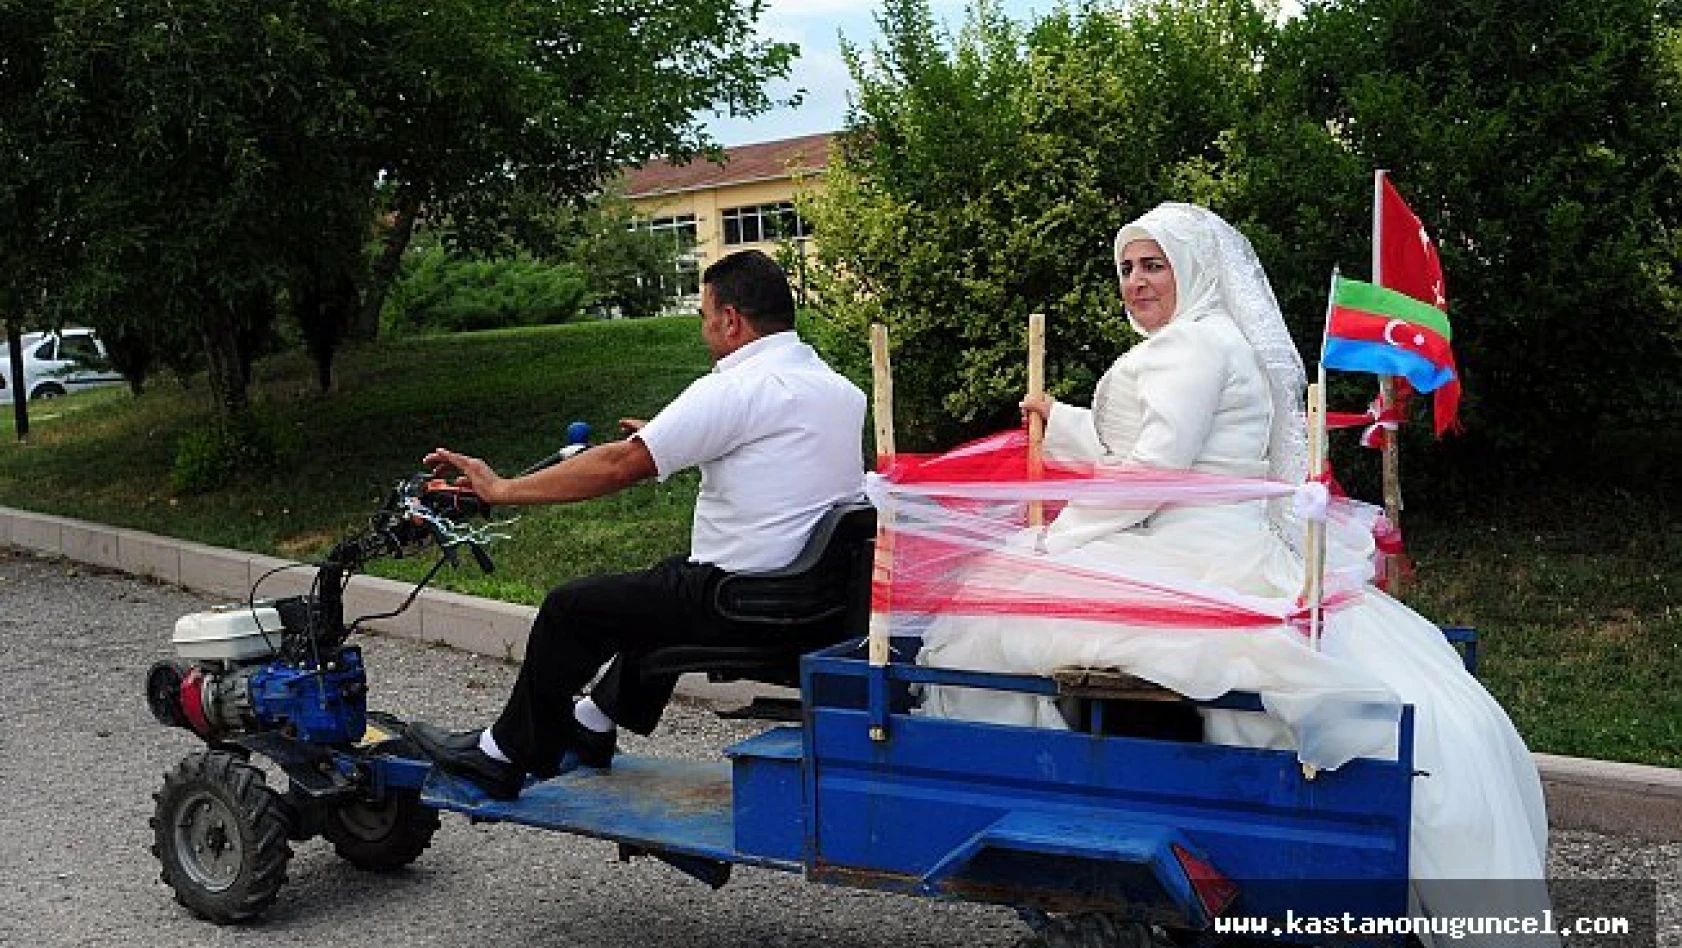 Türk damat, Azeri gelini patpat ile nikaha götürdü